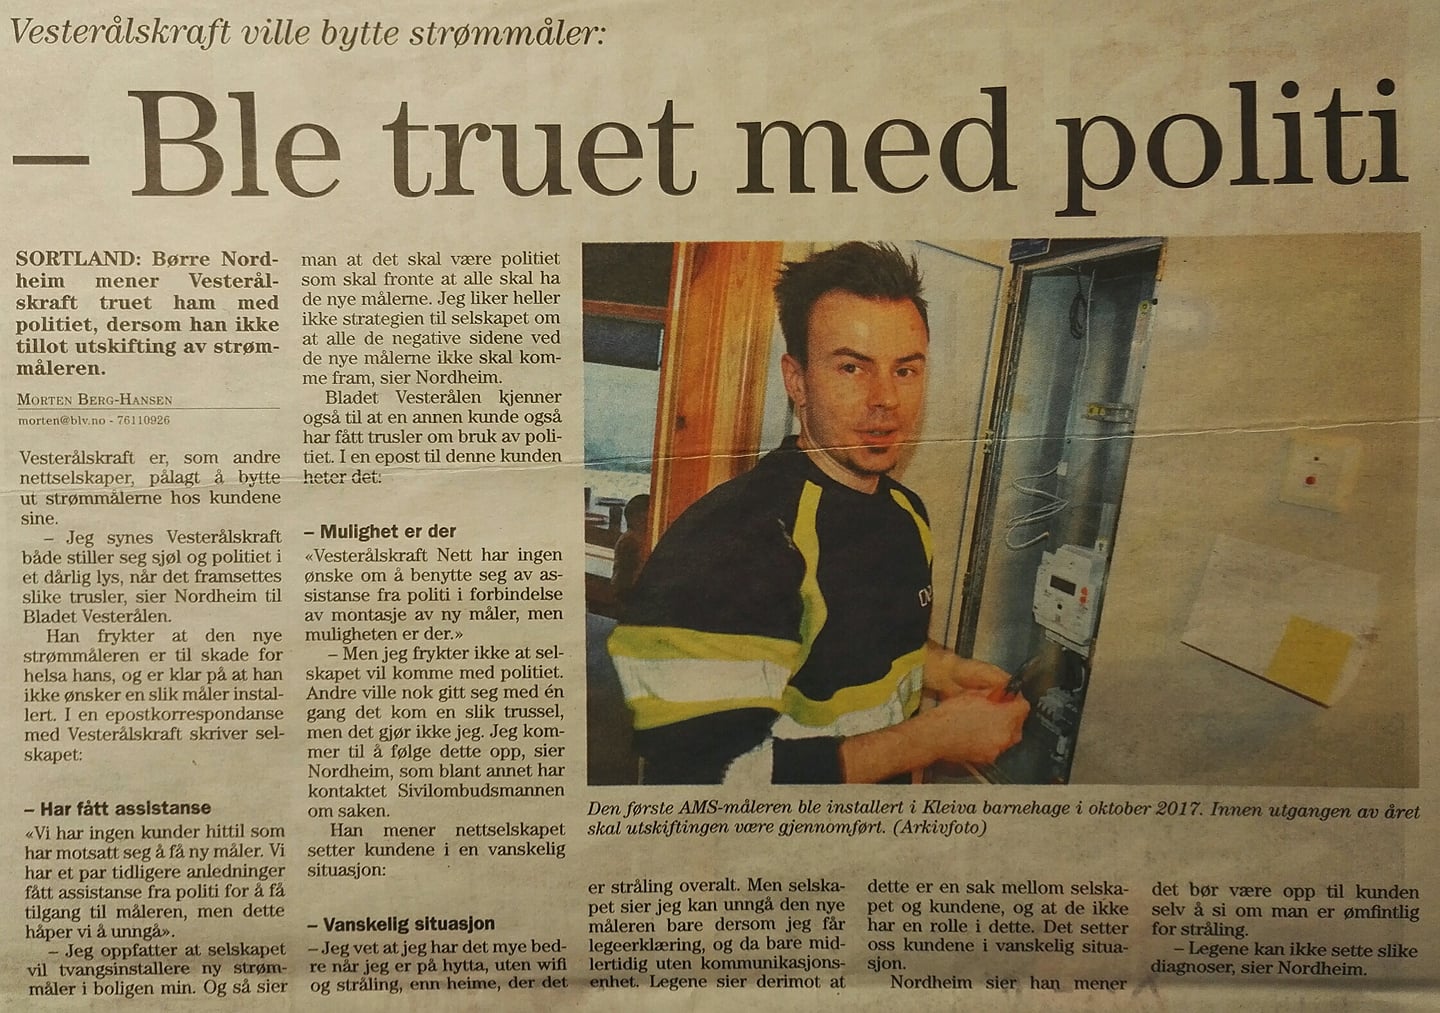 Vesterålskraft truet i epost Børre Nordheim med å ta i bruk politi for å påtvinge ham "smart" strømmåler.